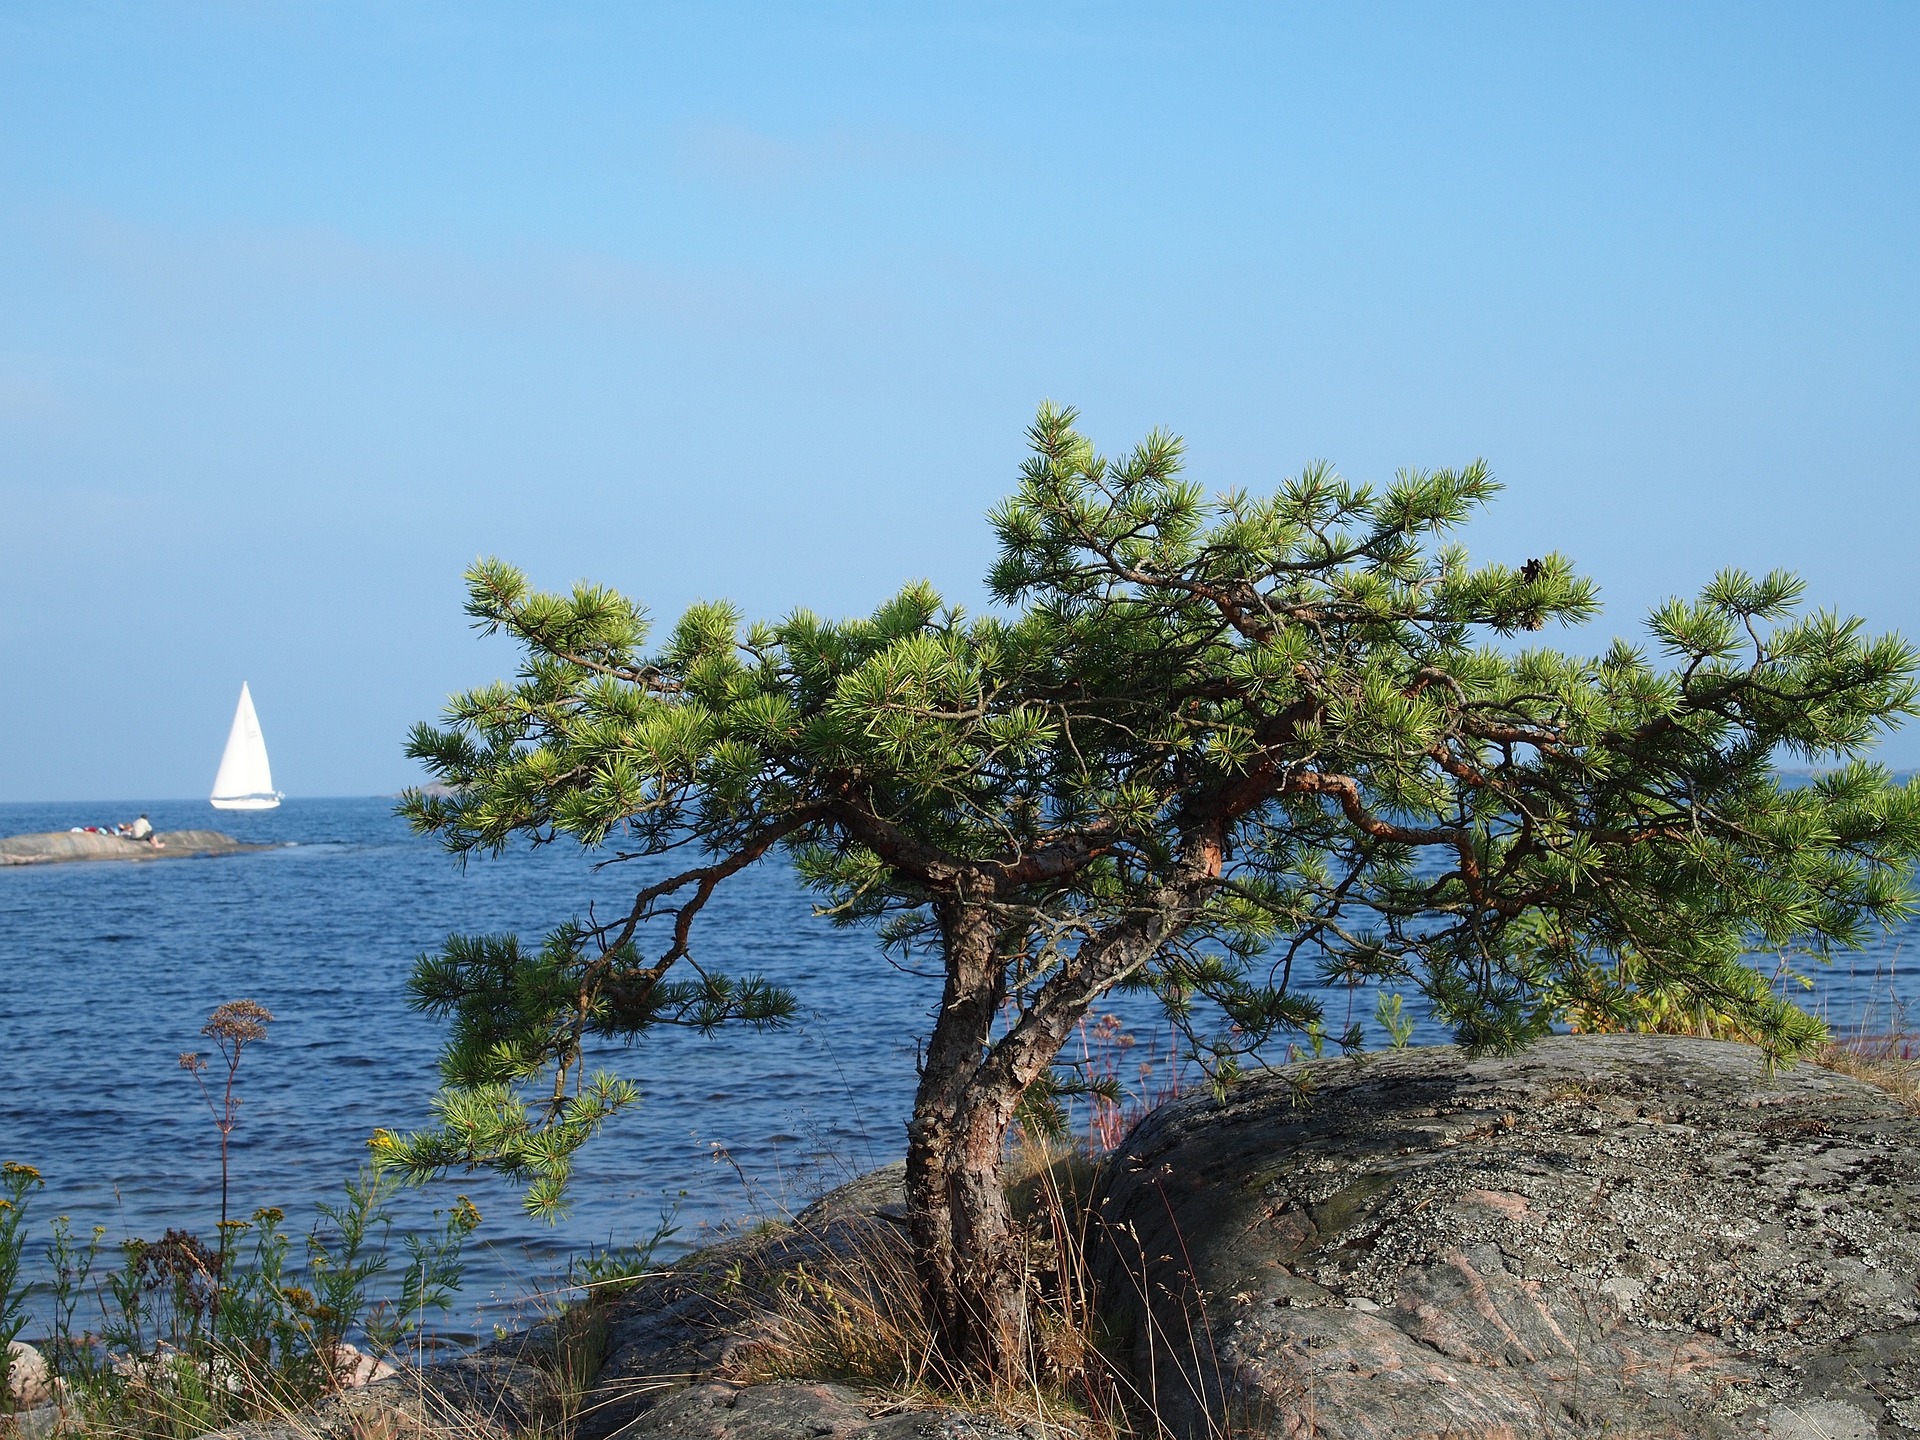 Utsikt över havet med en segelbåt till havs och en tall mellan klipporna i förgrunden. Bildkälla: Harald Stränz från Pixabay